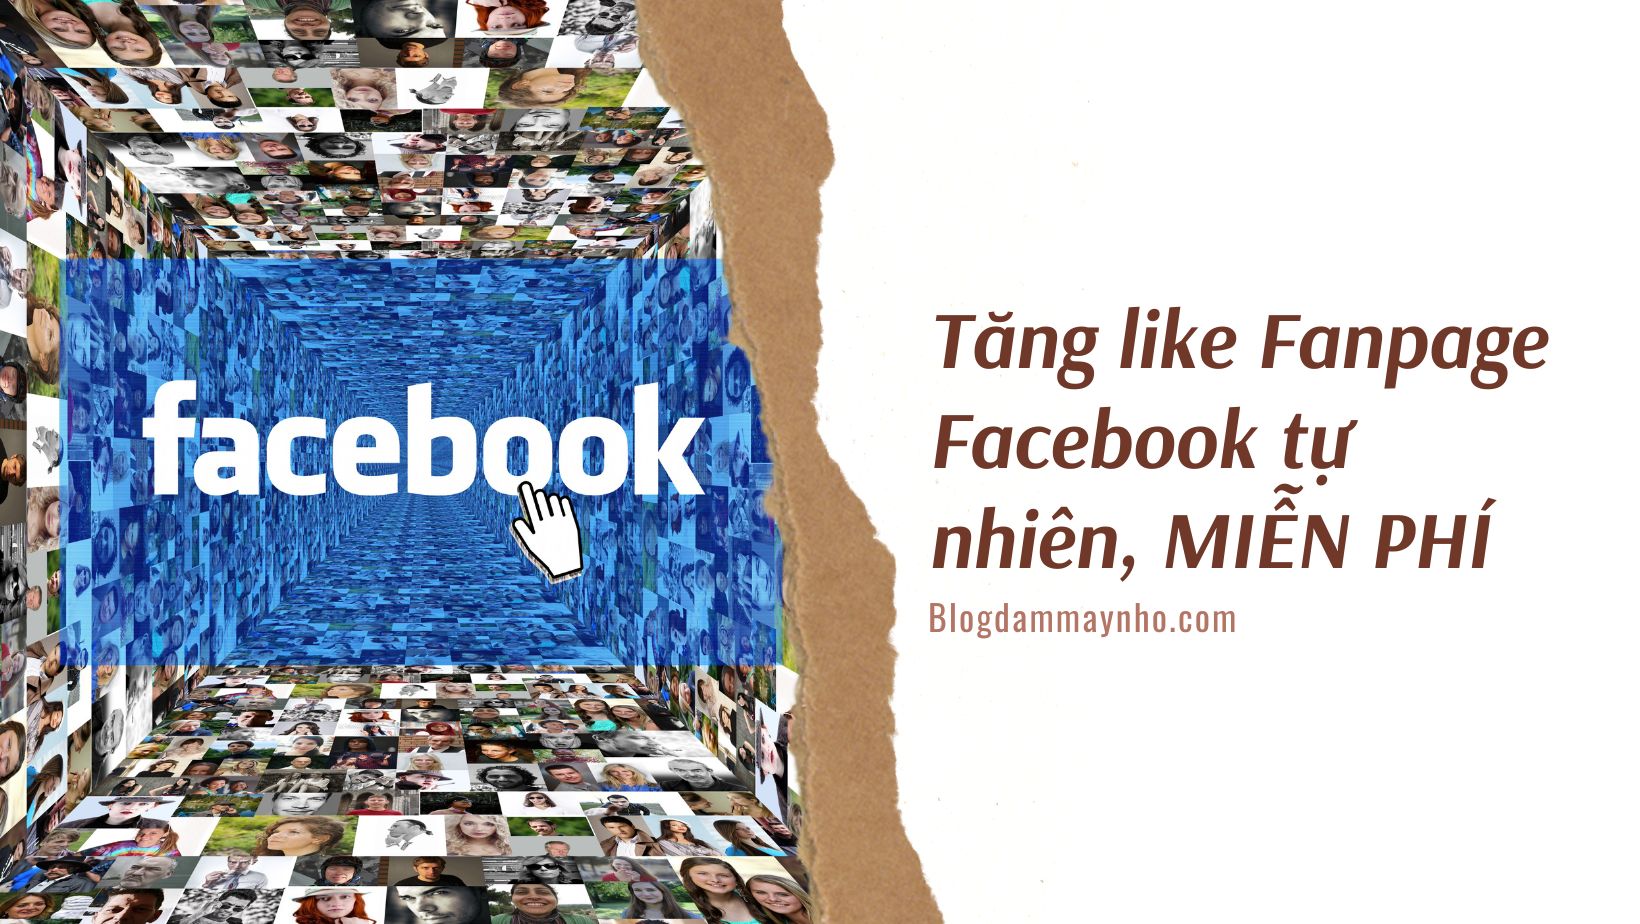 Tăng like Fanpage Facebook